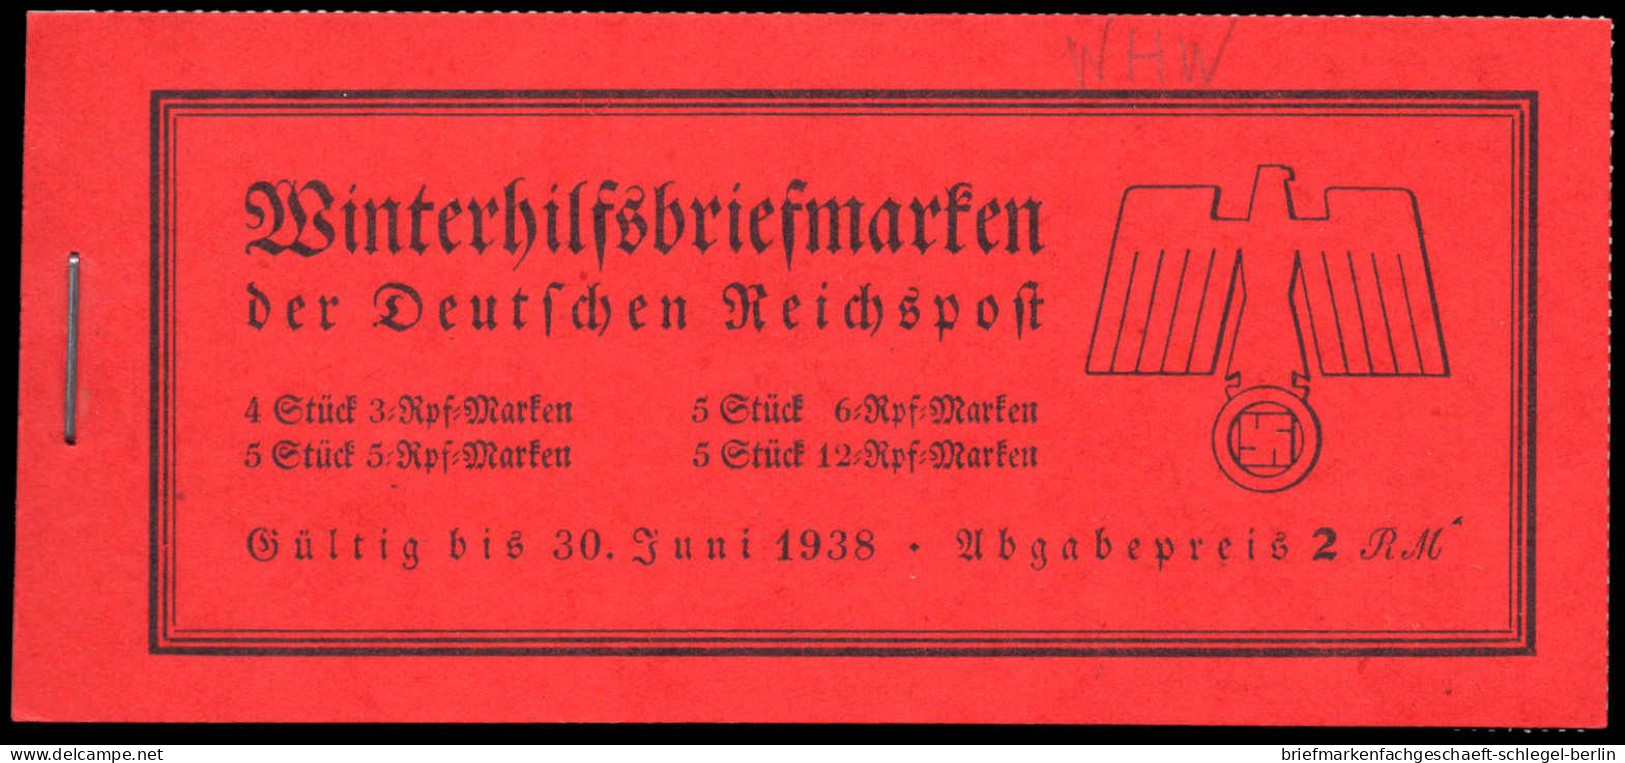 Deutsches Reich, 1937, MH 44, Postfrisch - Markenheftchen